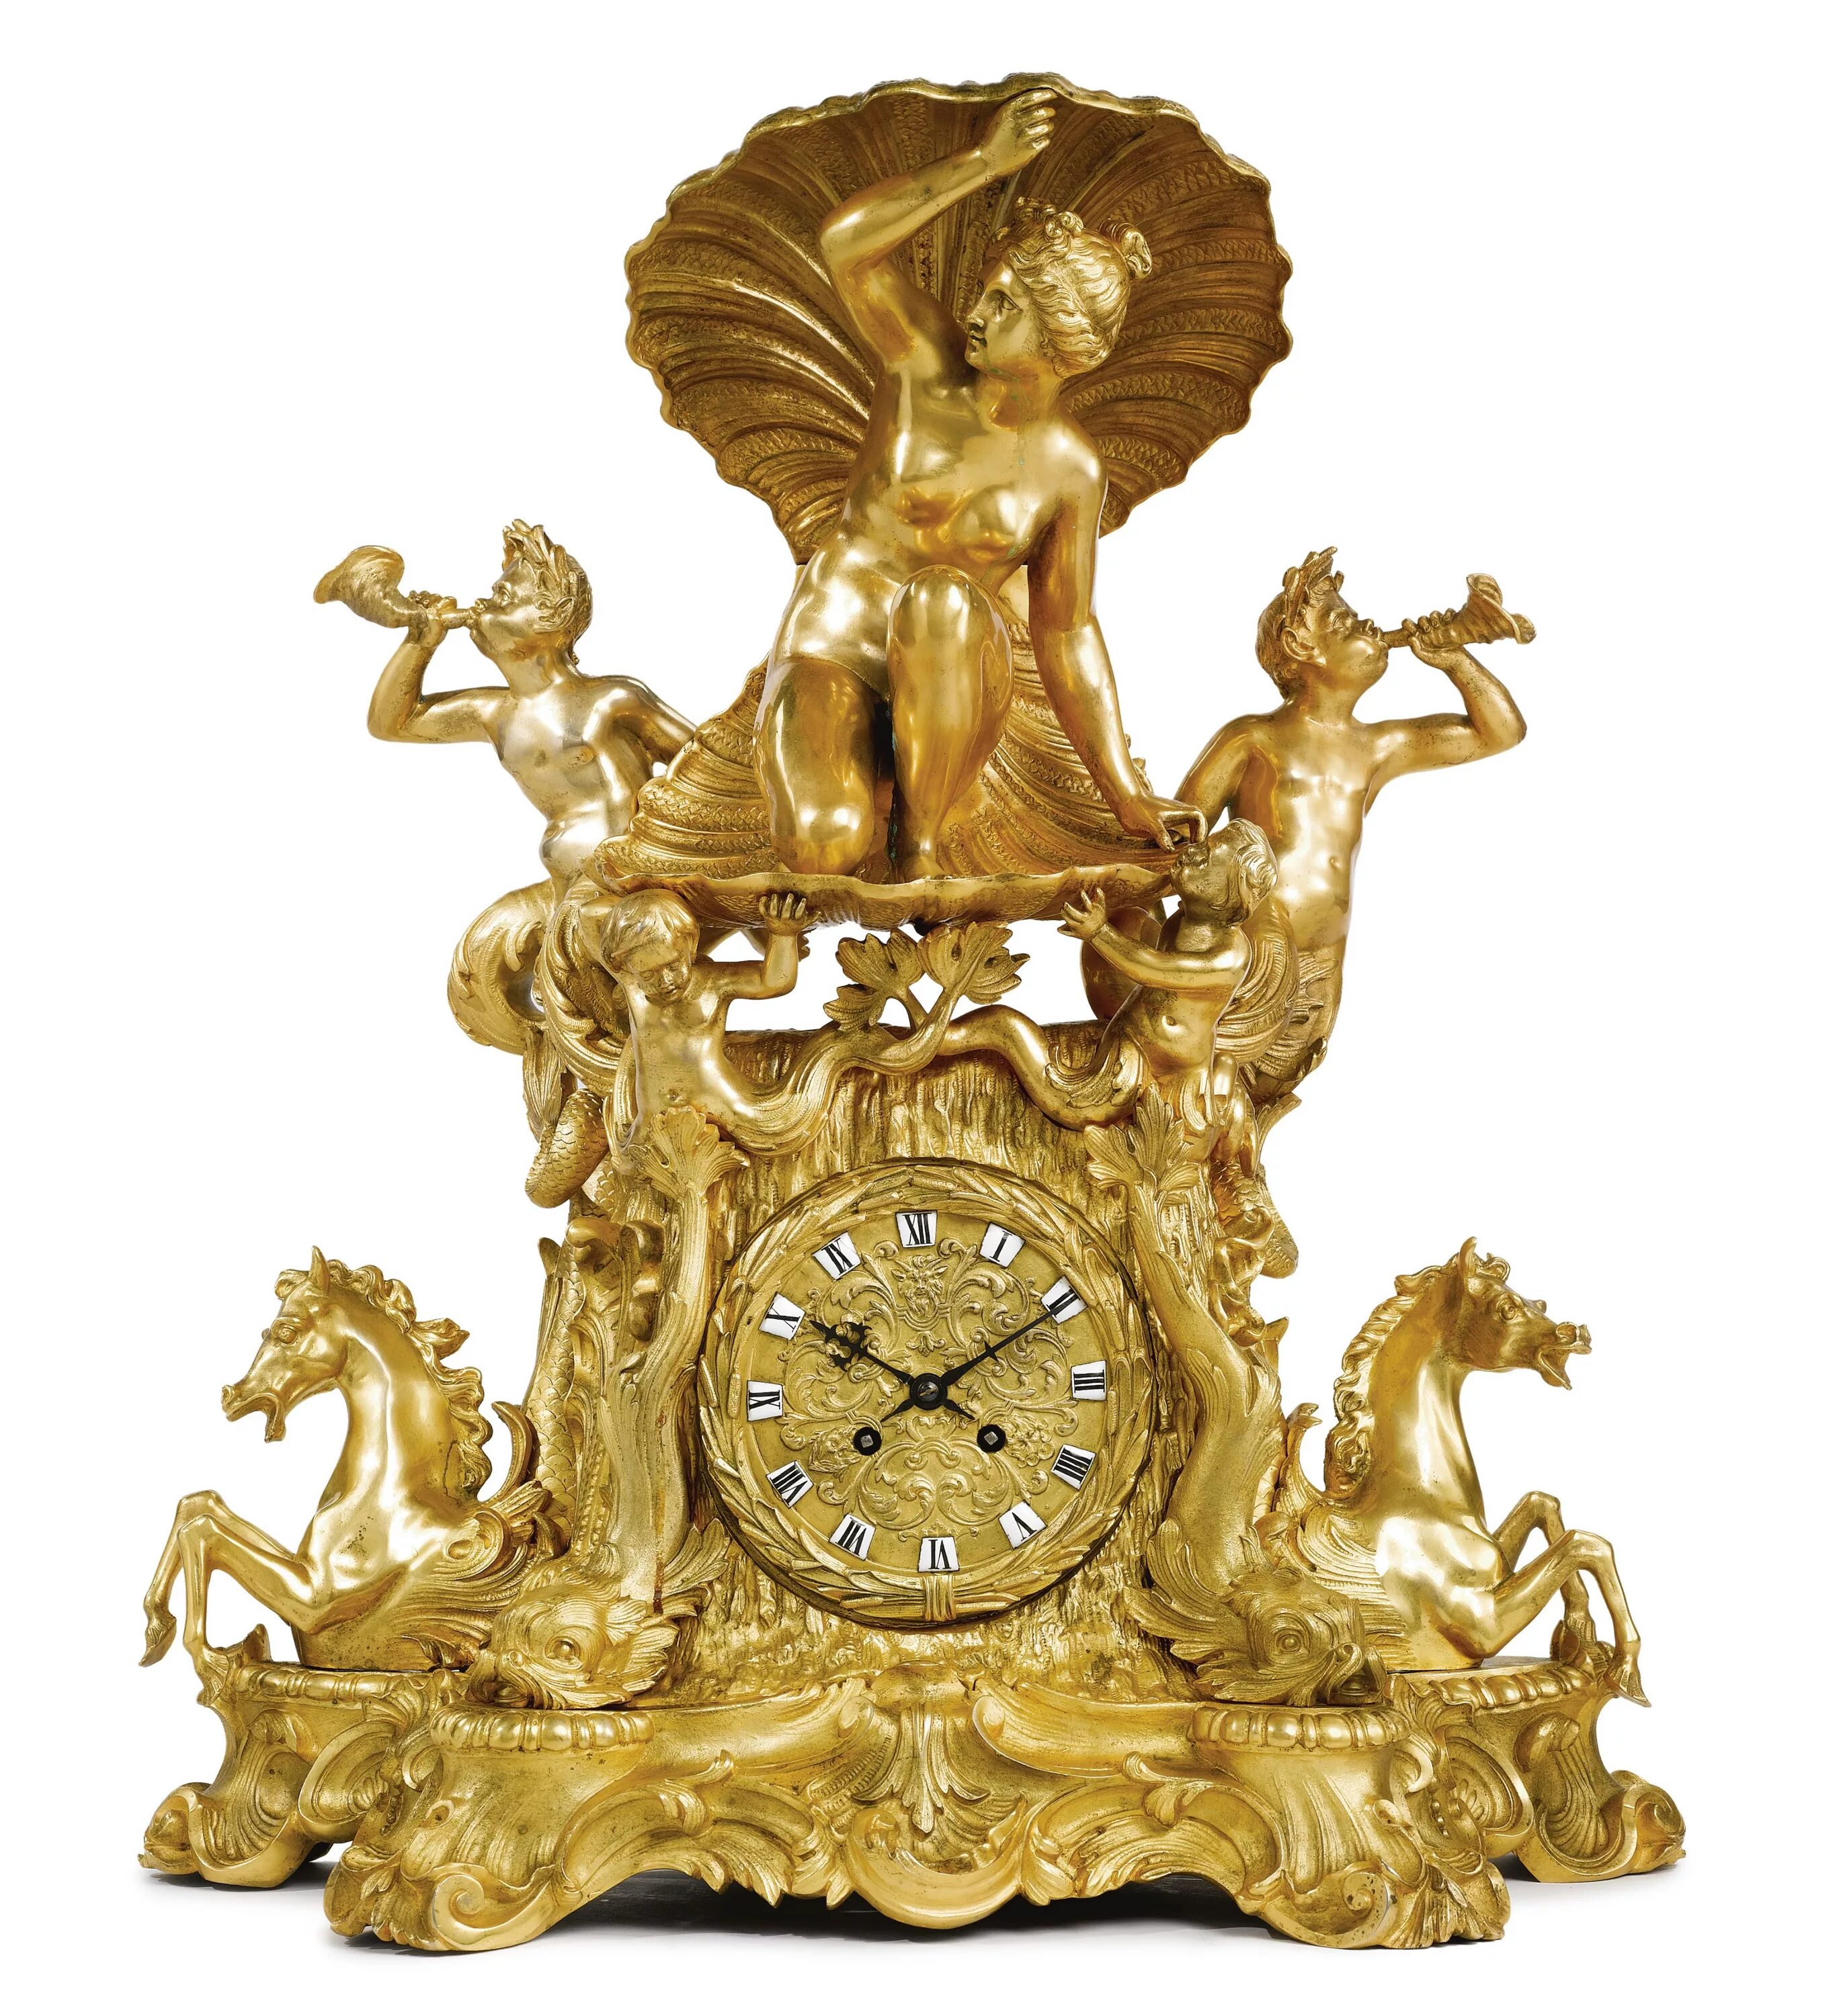 Версаль часы. Louis XIV часы. Часы каминные бронзовые Версаль. Japy freres часы. Сотбис каминные часы 2008-2009.